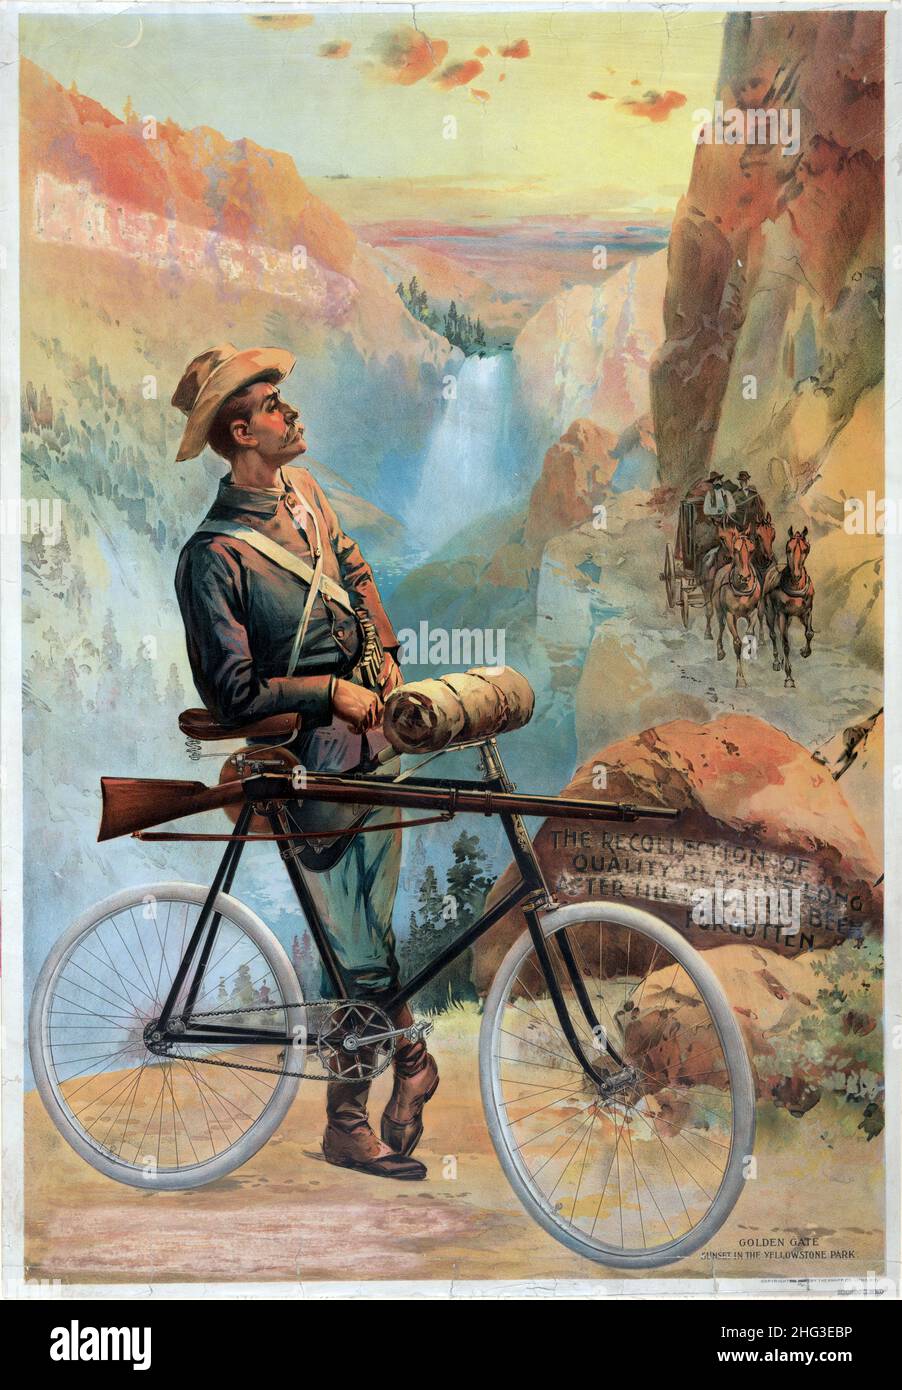 Litografía del siglo 19th de Golden Gate. Puesta de sol en el parque Yellowstone. 1897 El estampado Vintage muestra a un hombre, con una bicicleta a la que se sujeta un rifle, s Foto de stock